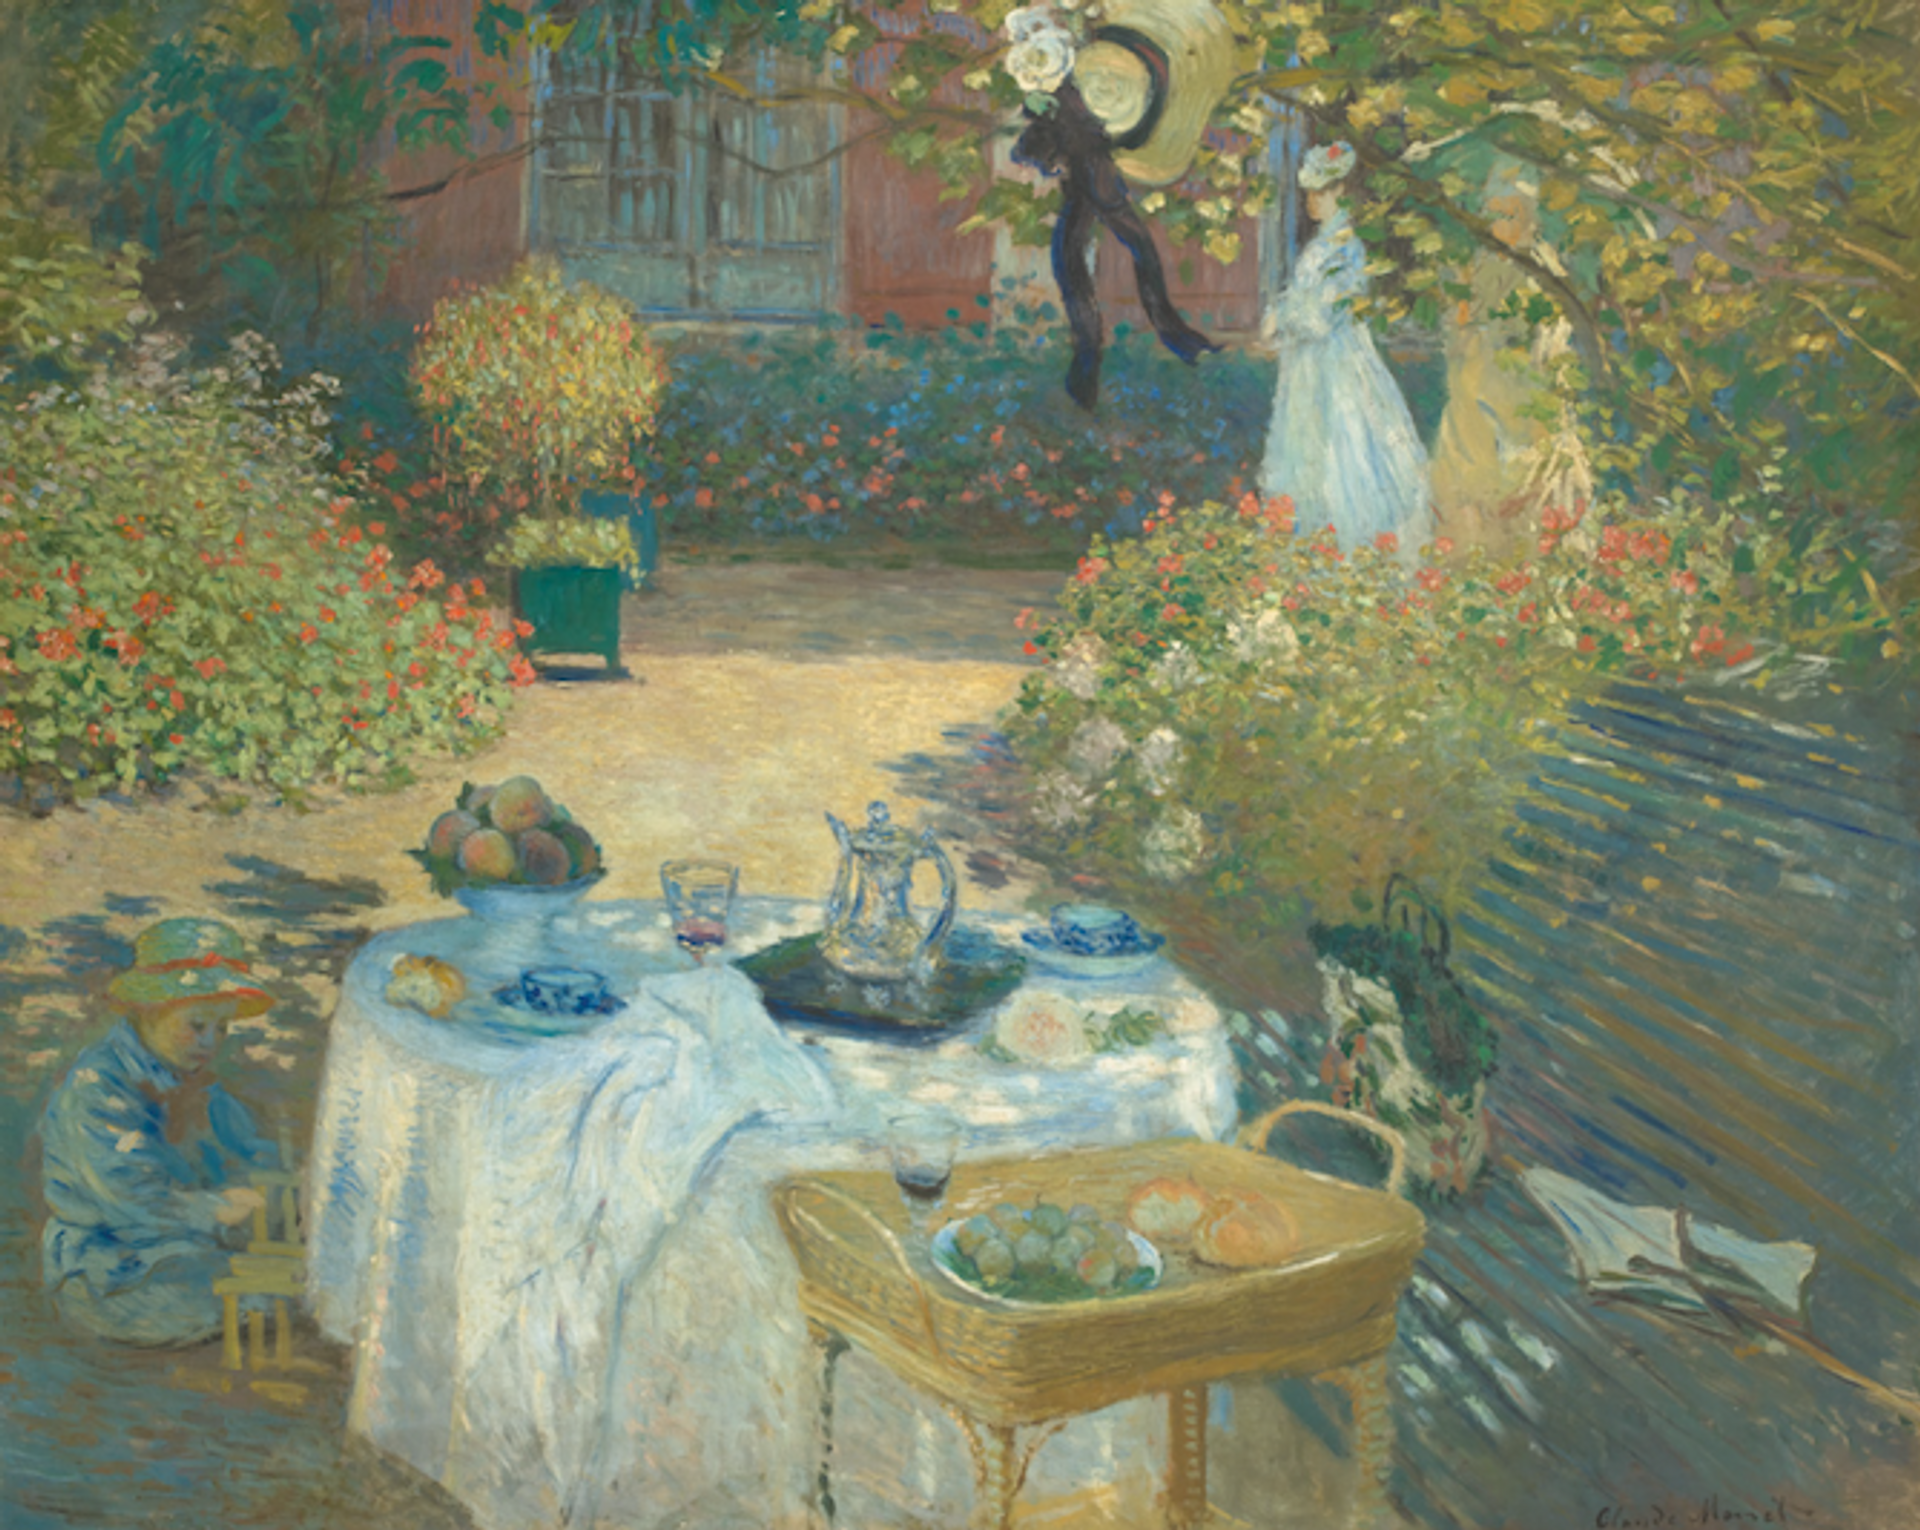 Claude Monet, Le Déjeuner, vers 1873, huile sur toile, Paris, musée d’Orsay. © RMN-Grand Palais (musée d’Orsay)/  Hervé Lewandowski